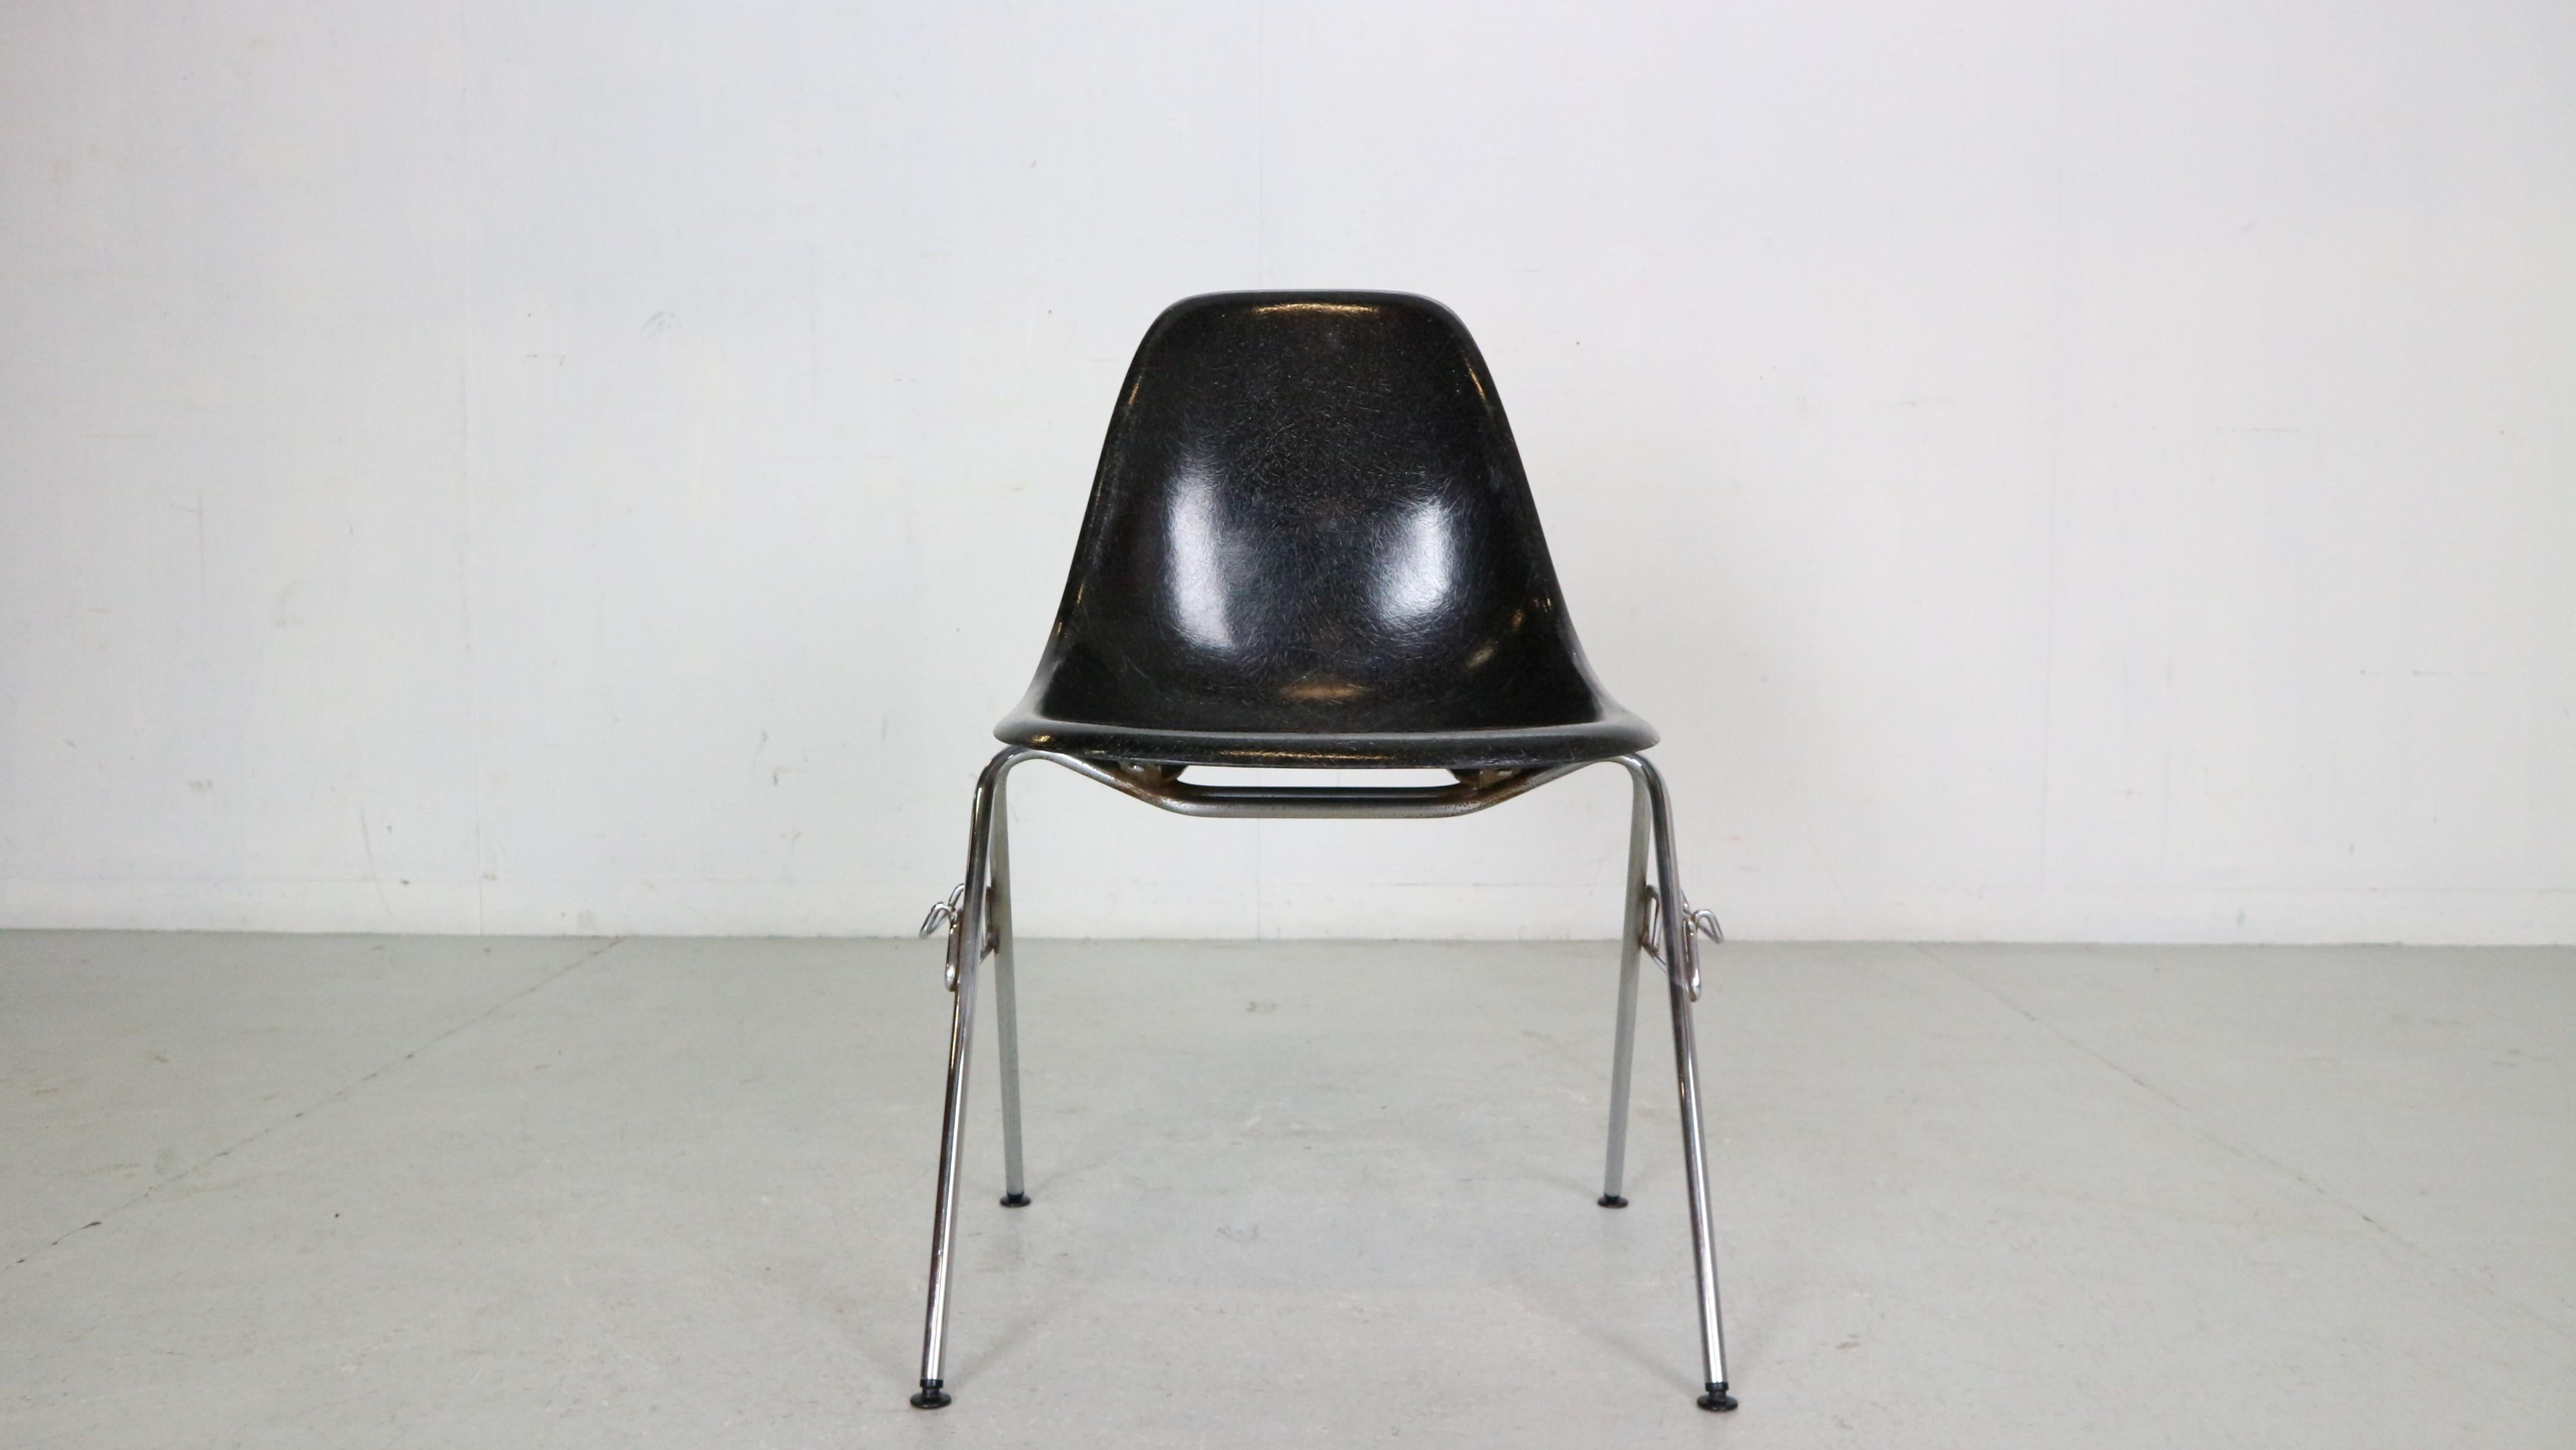 Stapelbare Esszimmerstühle aus der Mitte des Jahrhunderts, entworfen von den berühmten Möbeldesignern Charles & Ray Eames für Herman Miller in den 1970er Jahren, etwa.

Eine geformte schwarze Glasfaserschale mit großer Struktur ist auf einem